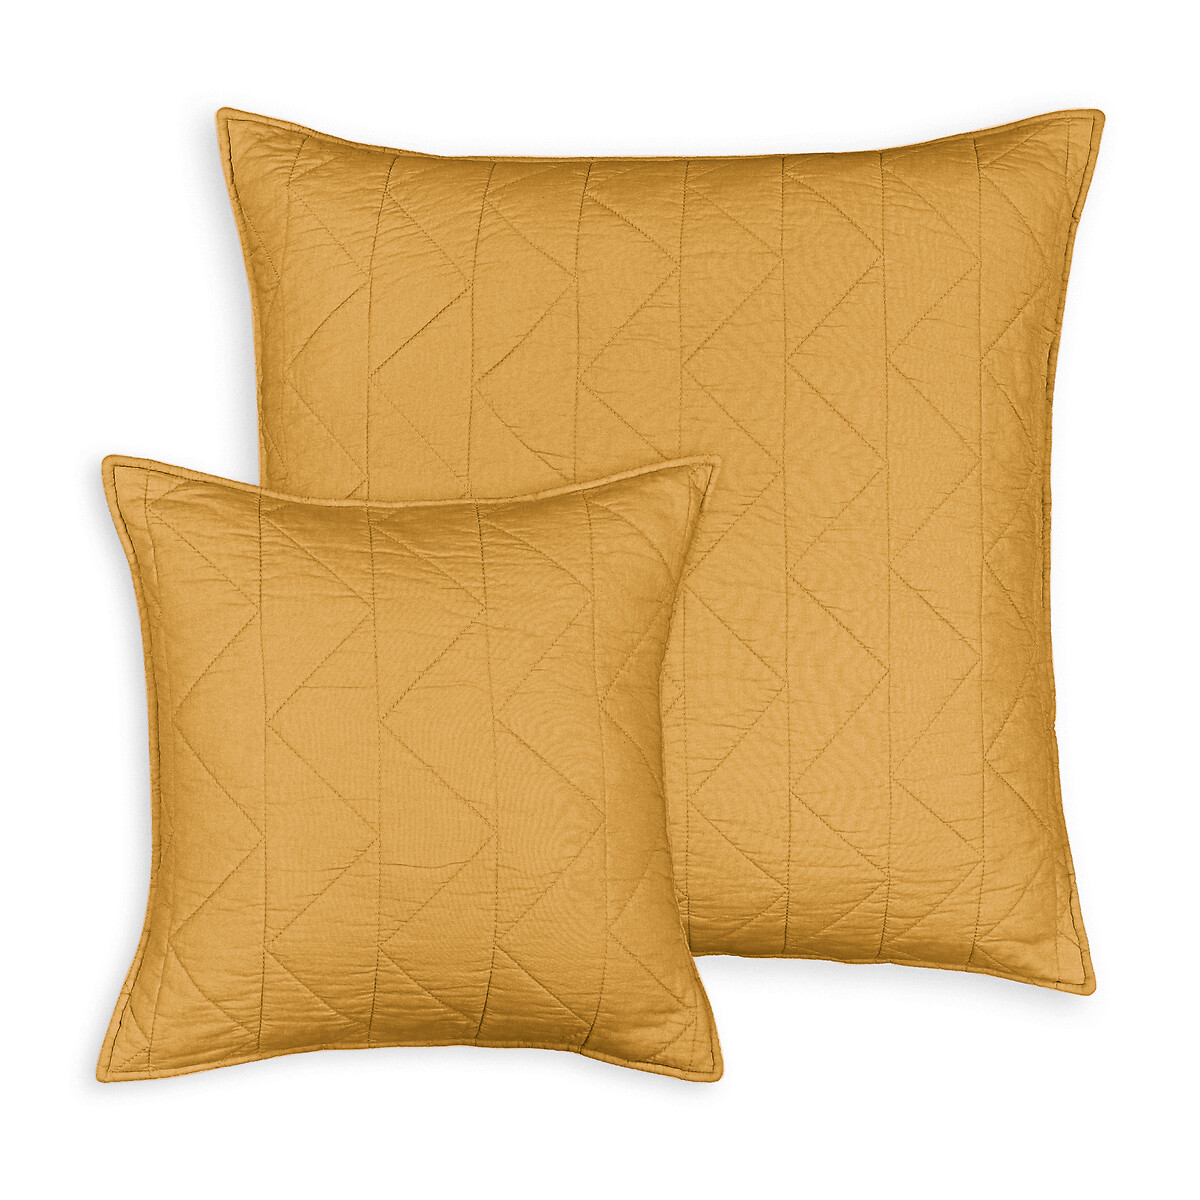 Чехол La Redoute На подушку  наволочка Zig-zag 65 x 65 см желтый, размер 65 x 65 см - фото 1